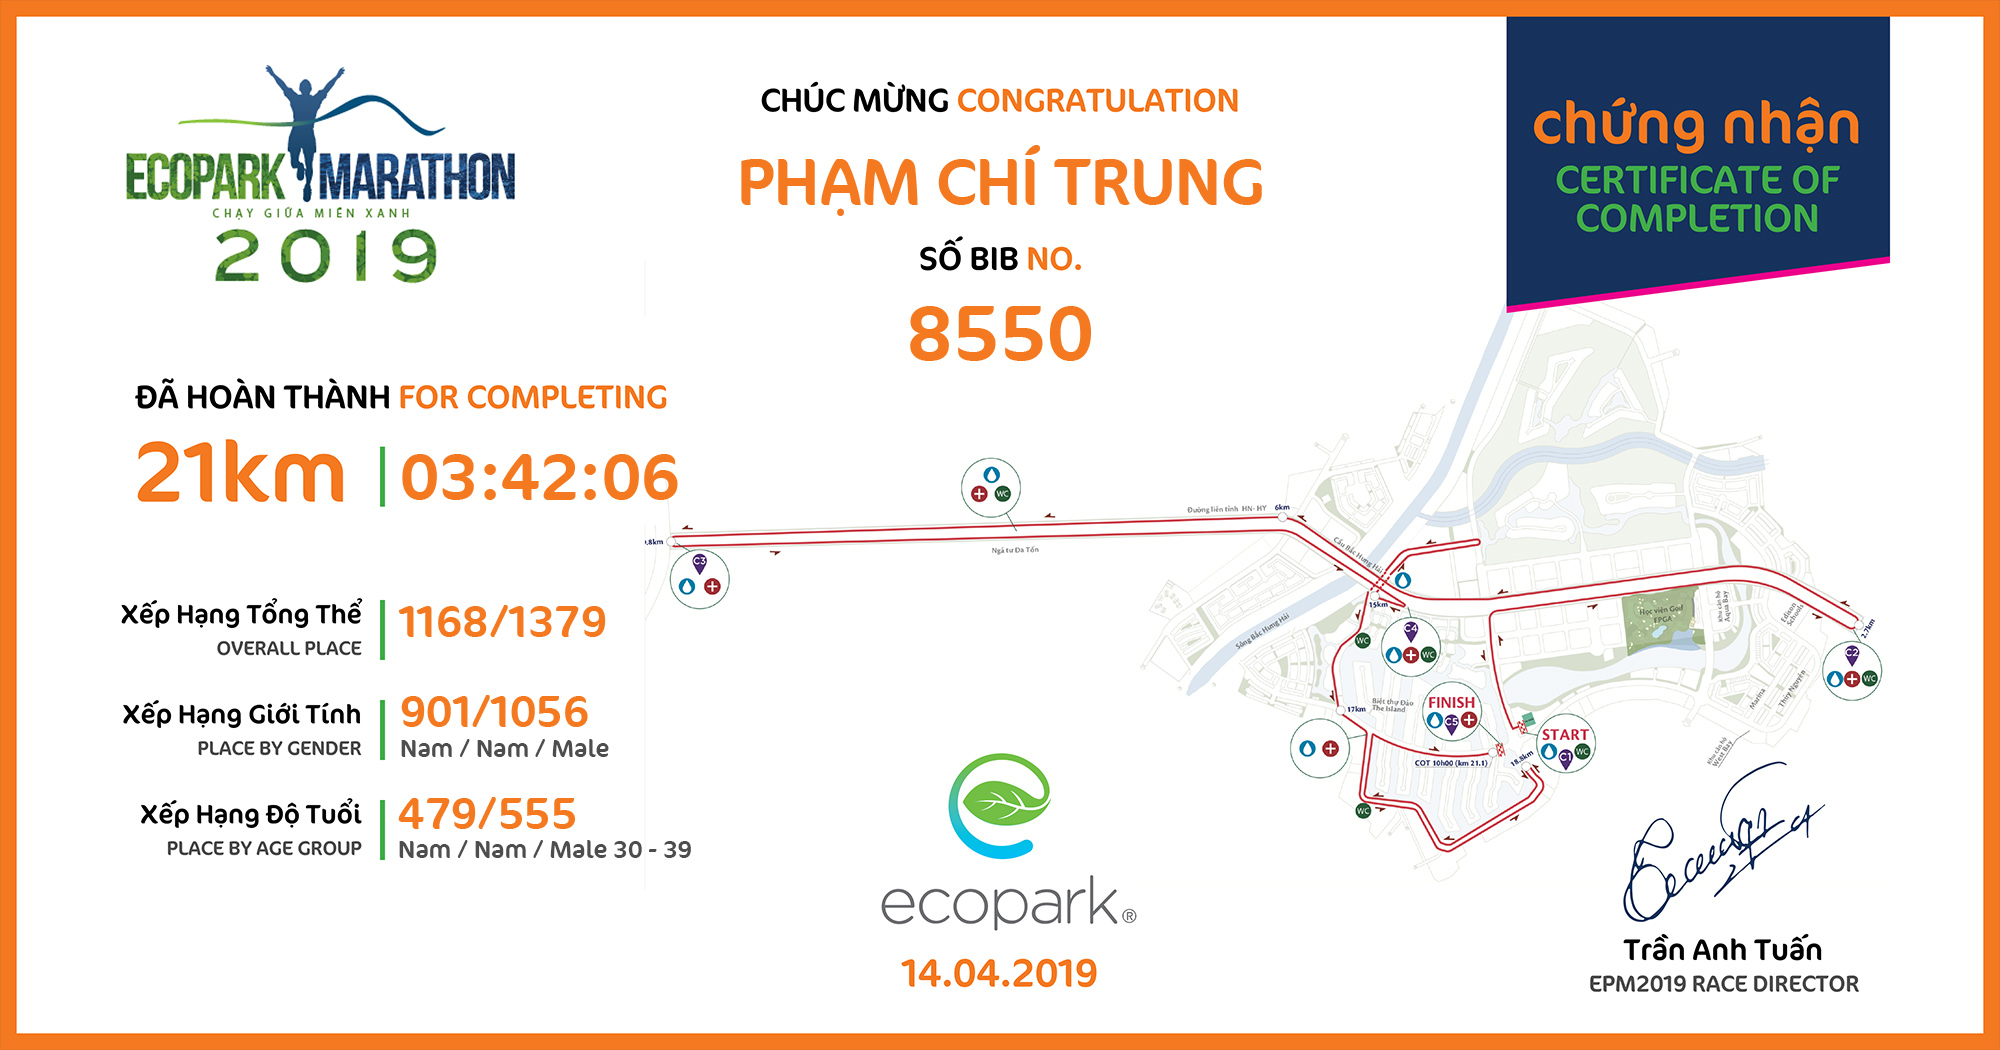 8550 - Phạm Chí Trung